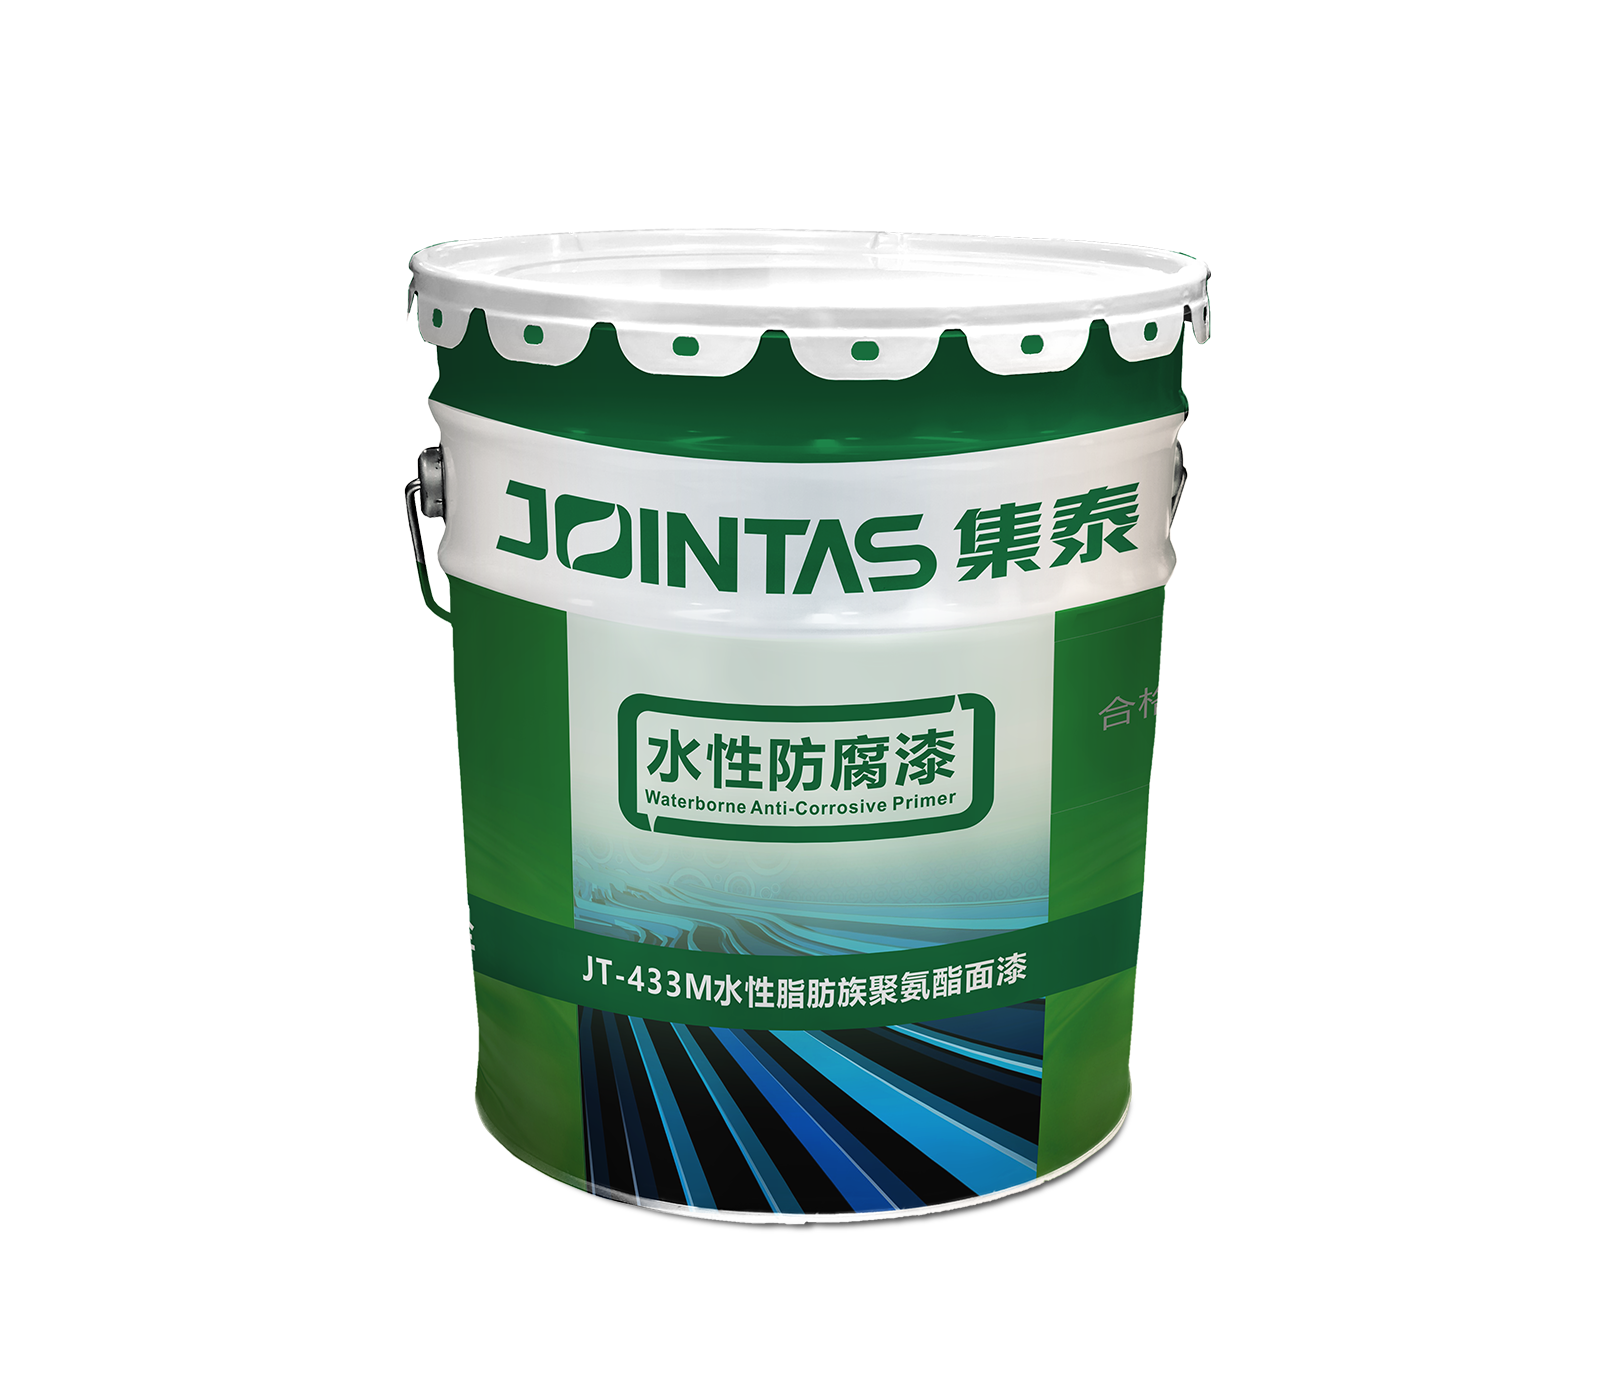  JT-433M 水性脂肪族聚氨酯面漆